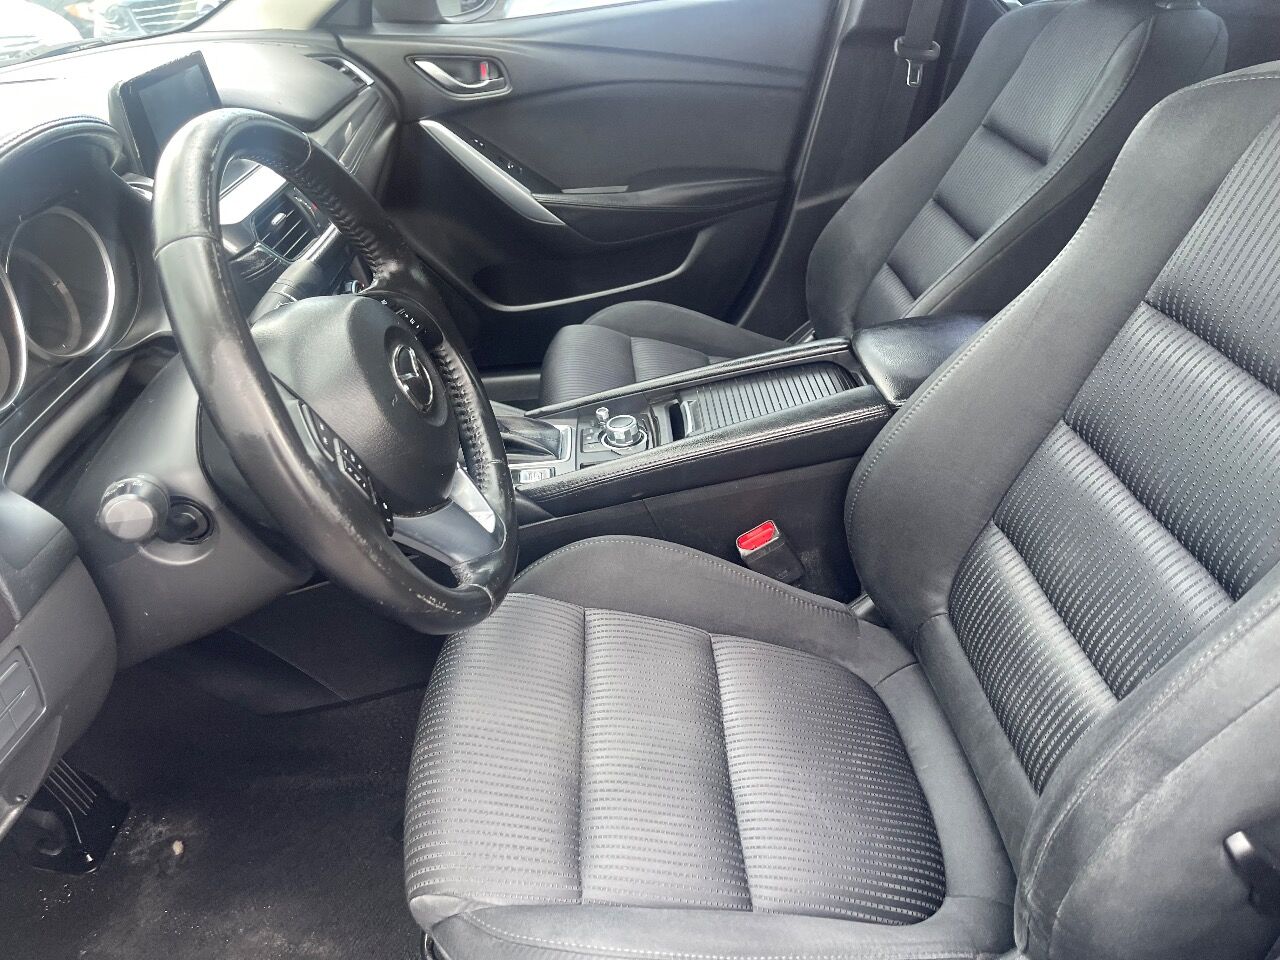 2016 MAZDA Mazda6 Sedan - $14,900